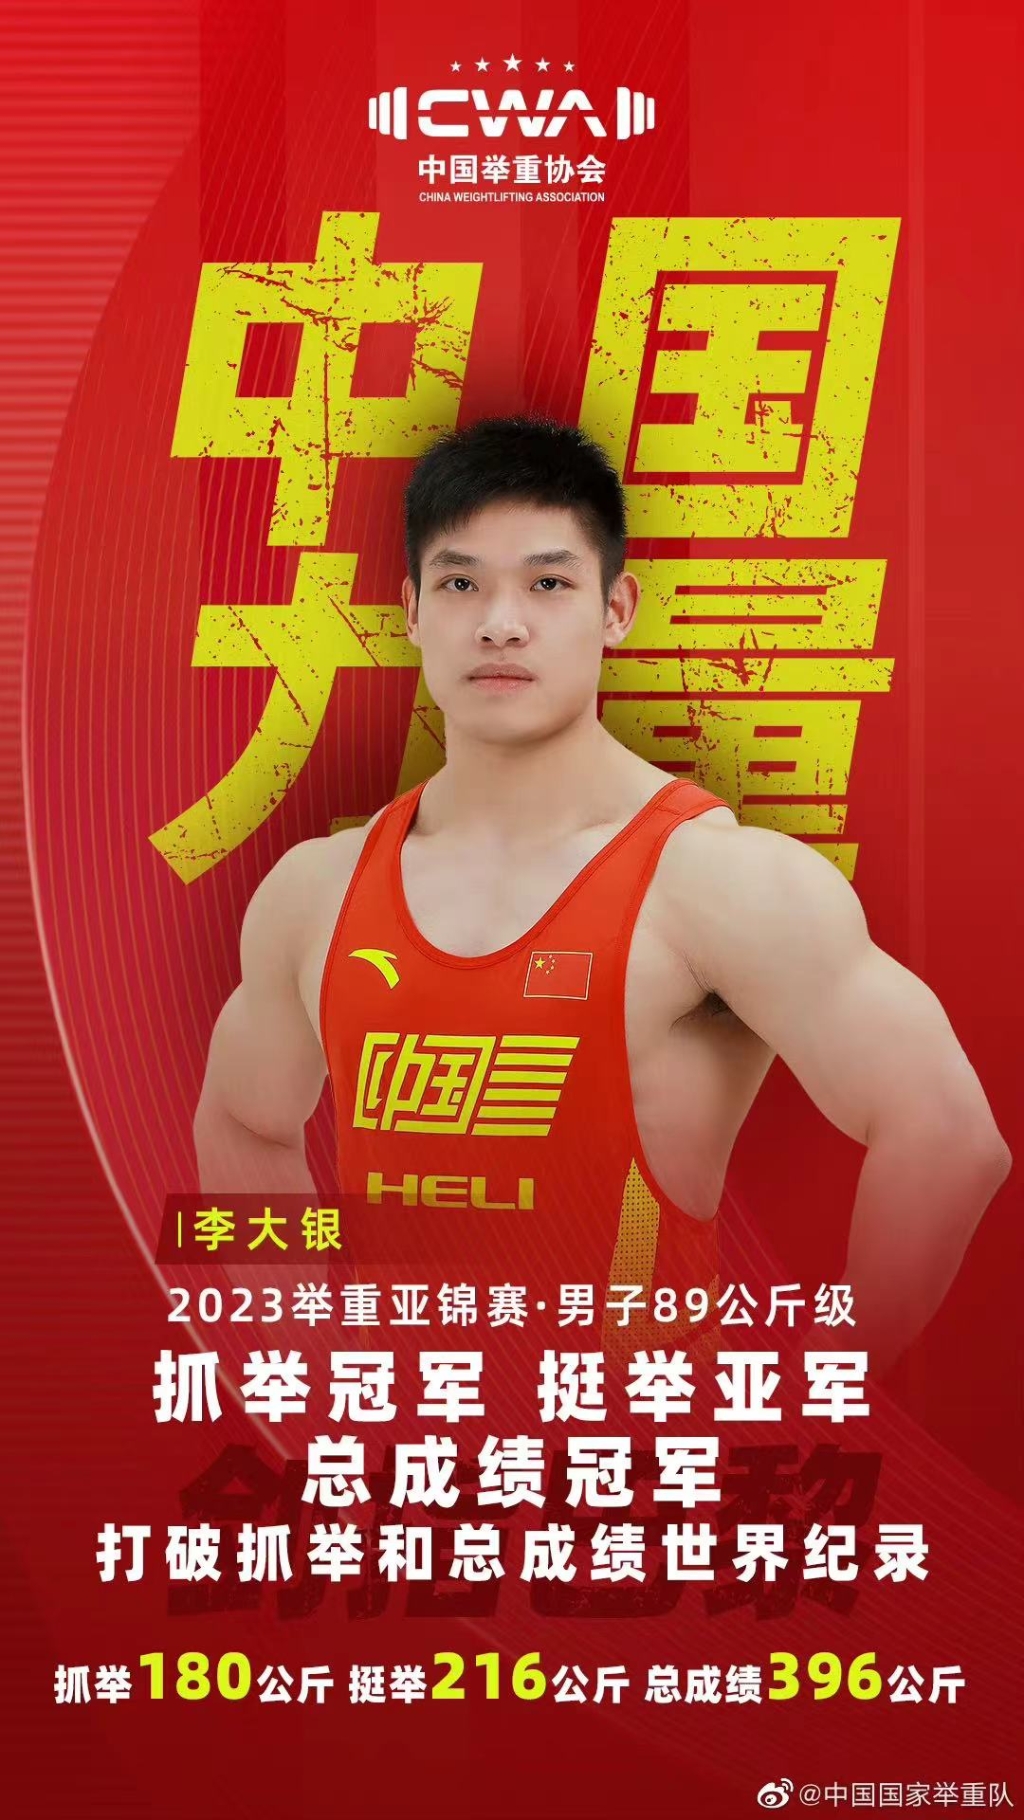 中国力量重庆崽儿李大银亚洲举重锦标赛夺冠并打破世界纪录